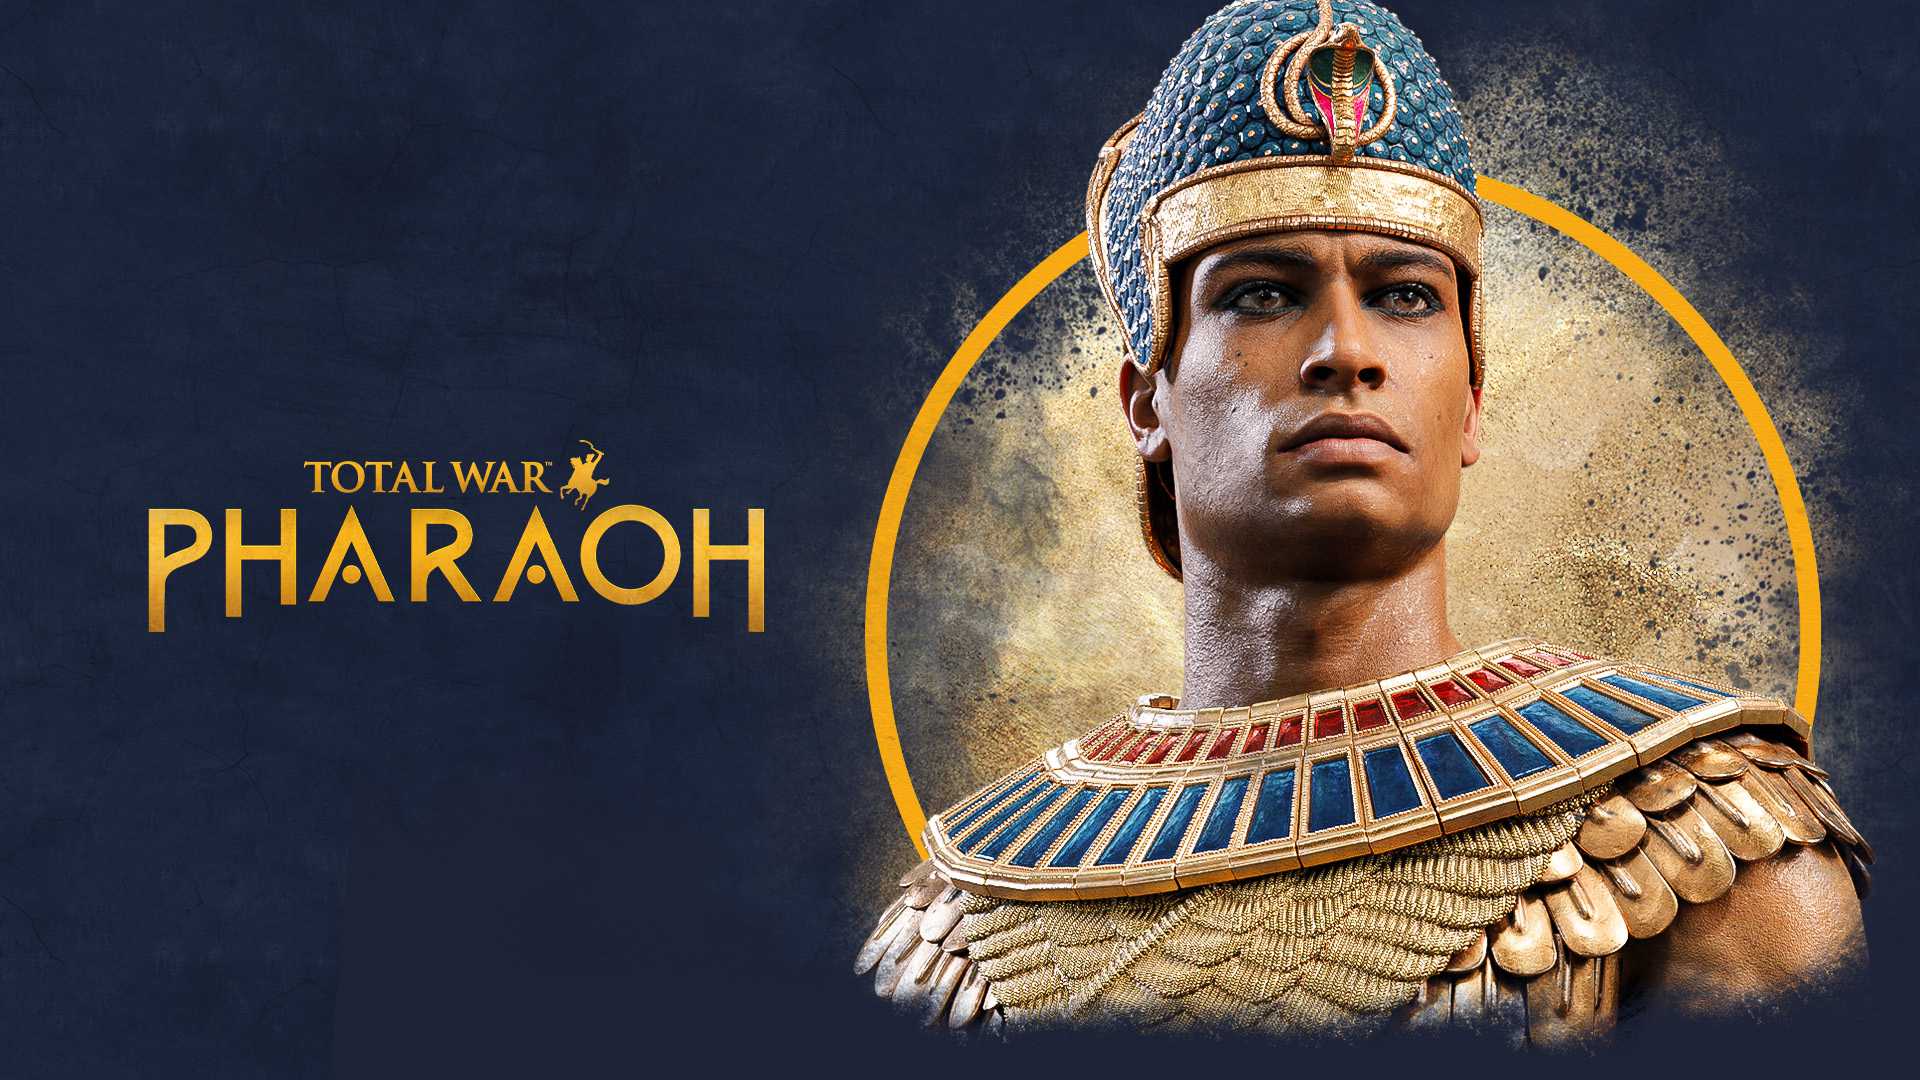 TotalWar_Pharaoh_KEYART16x9